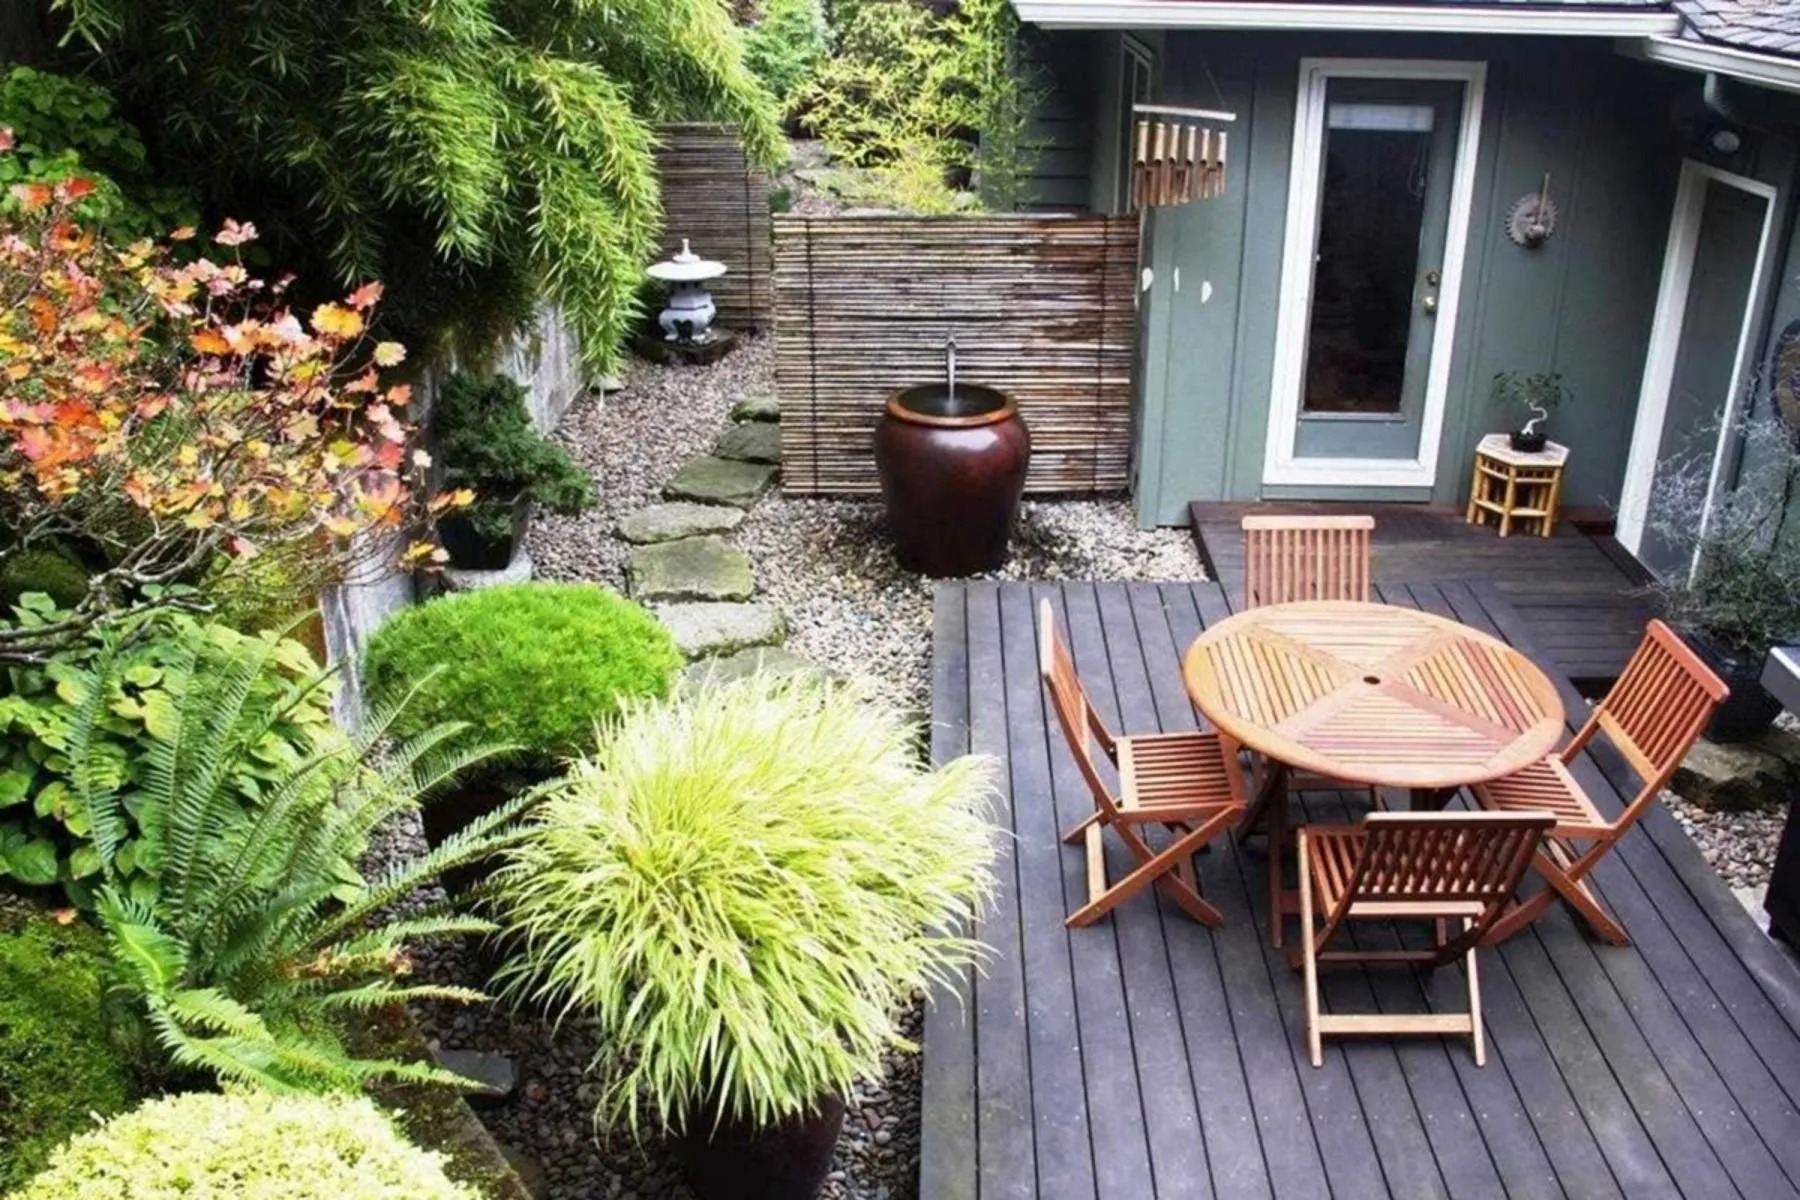 Как красиво оформить двор частного дома: несколько простых идей от декораторов